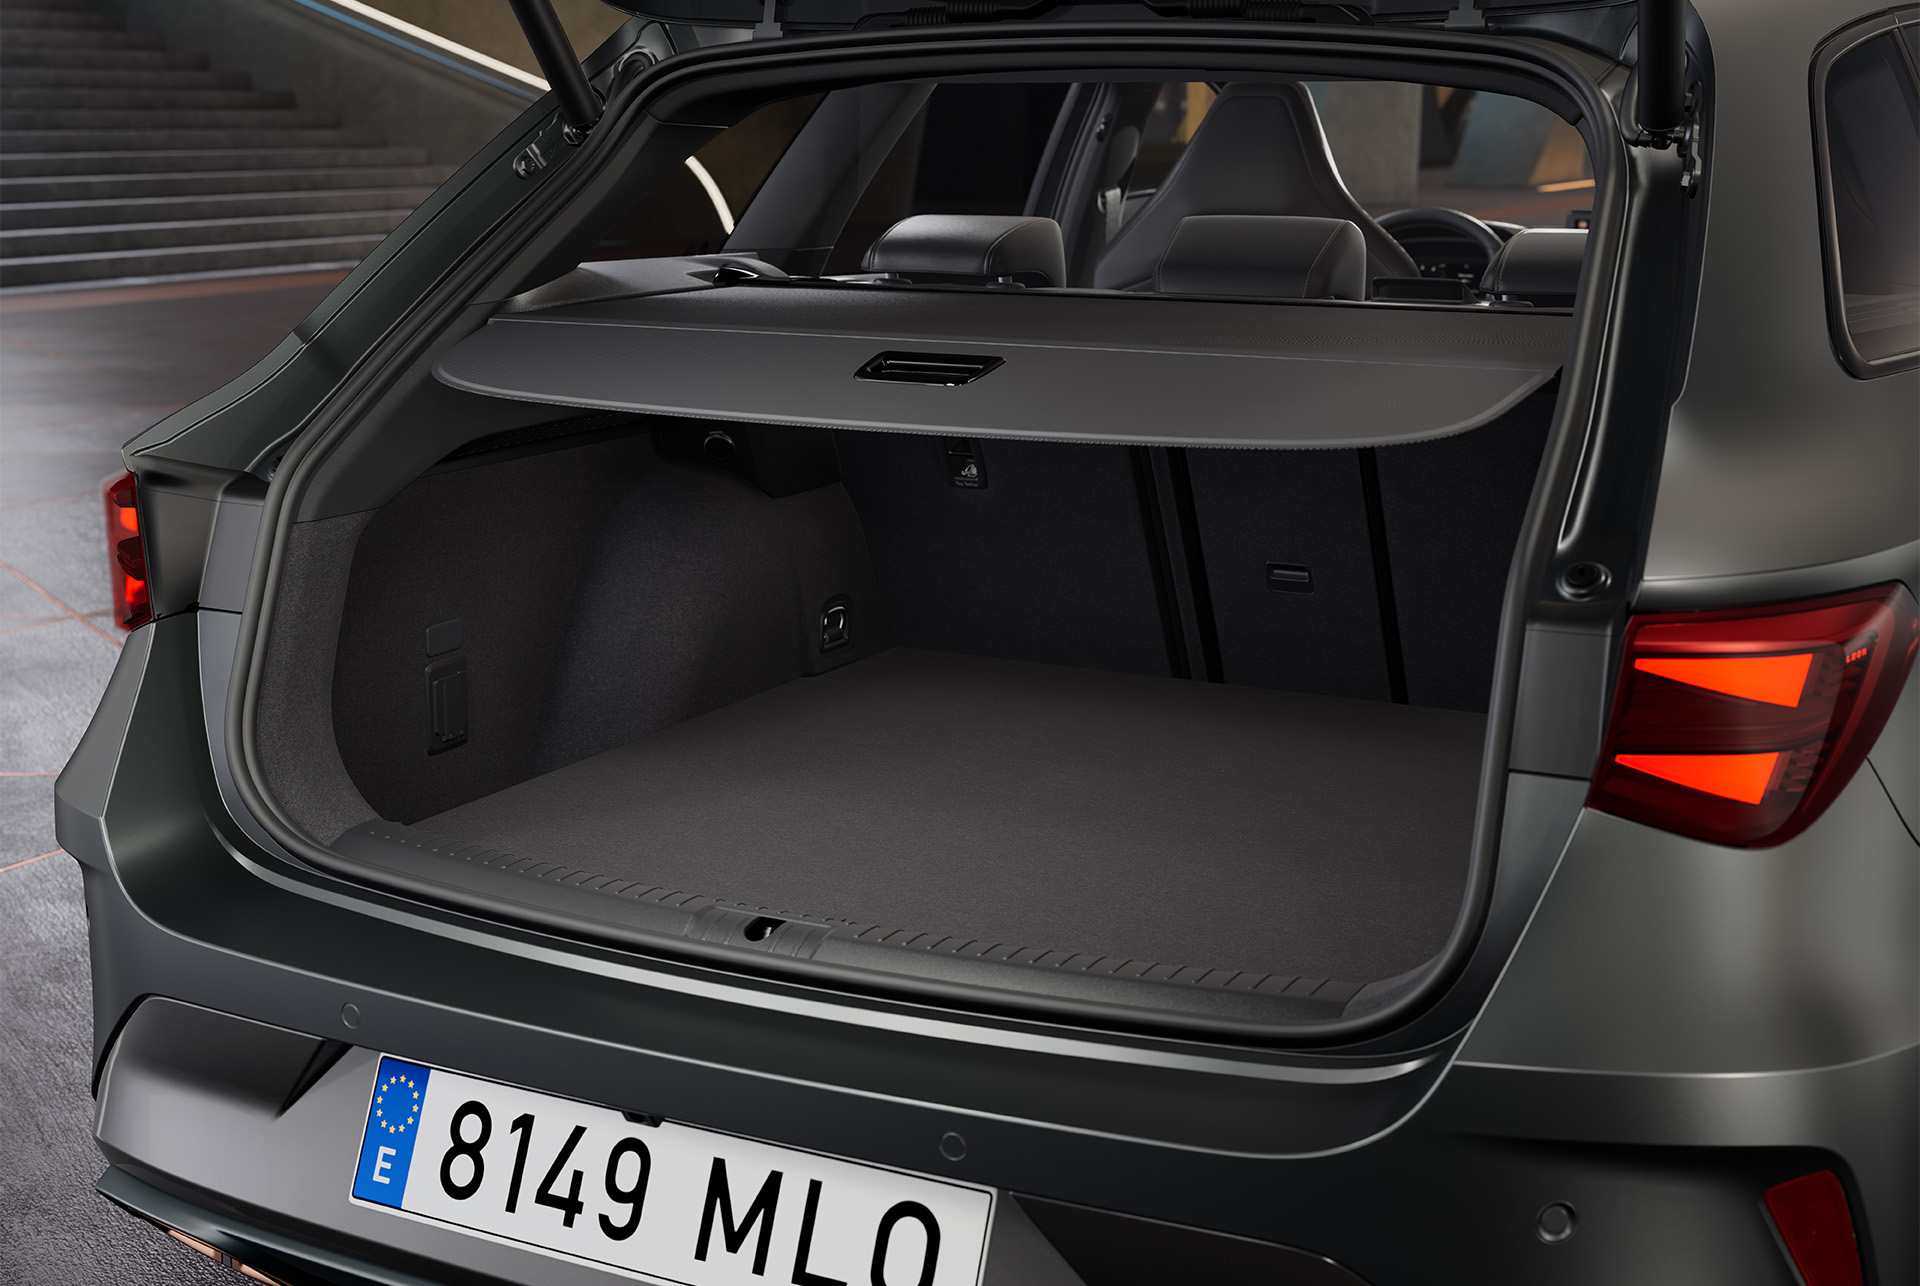 Maletero abierto del nuevo vehículo híbrido CUPRA León Sportstourer gris, que revela un gran espacio con interior negro. Dentro del maletero hay una bolsa.